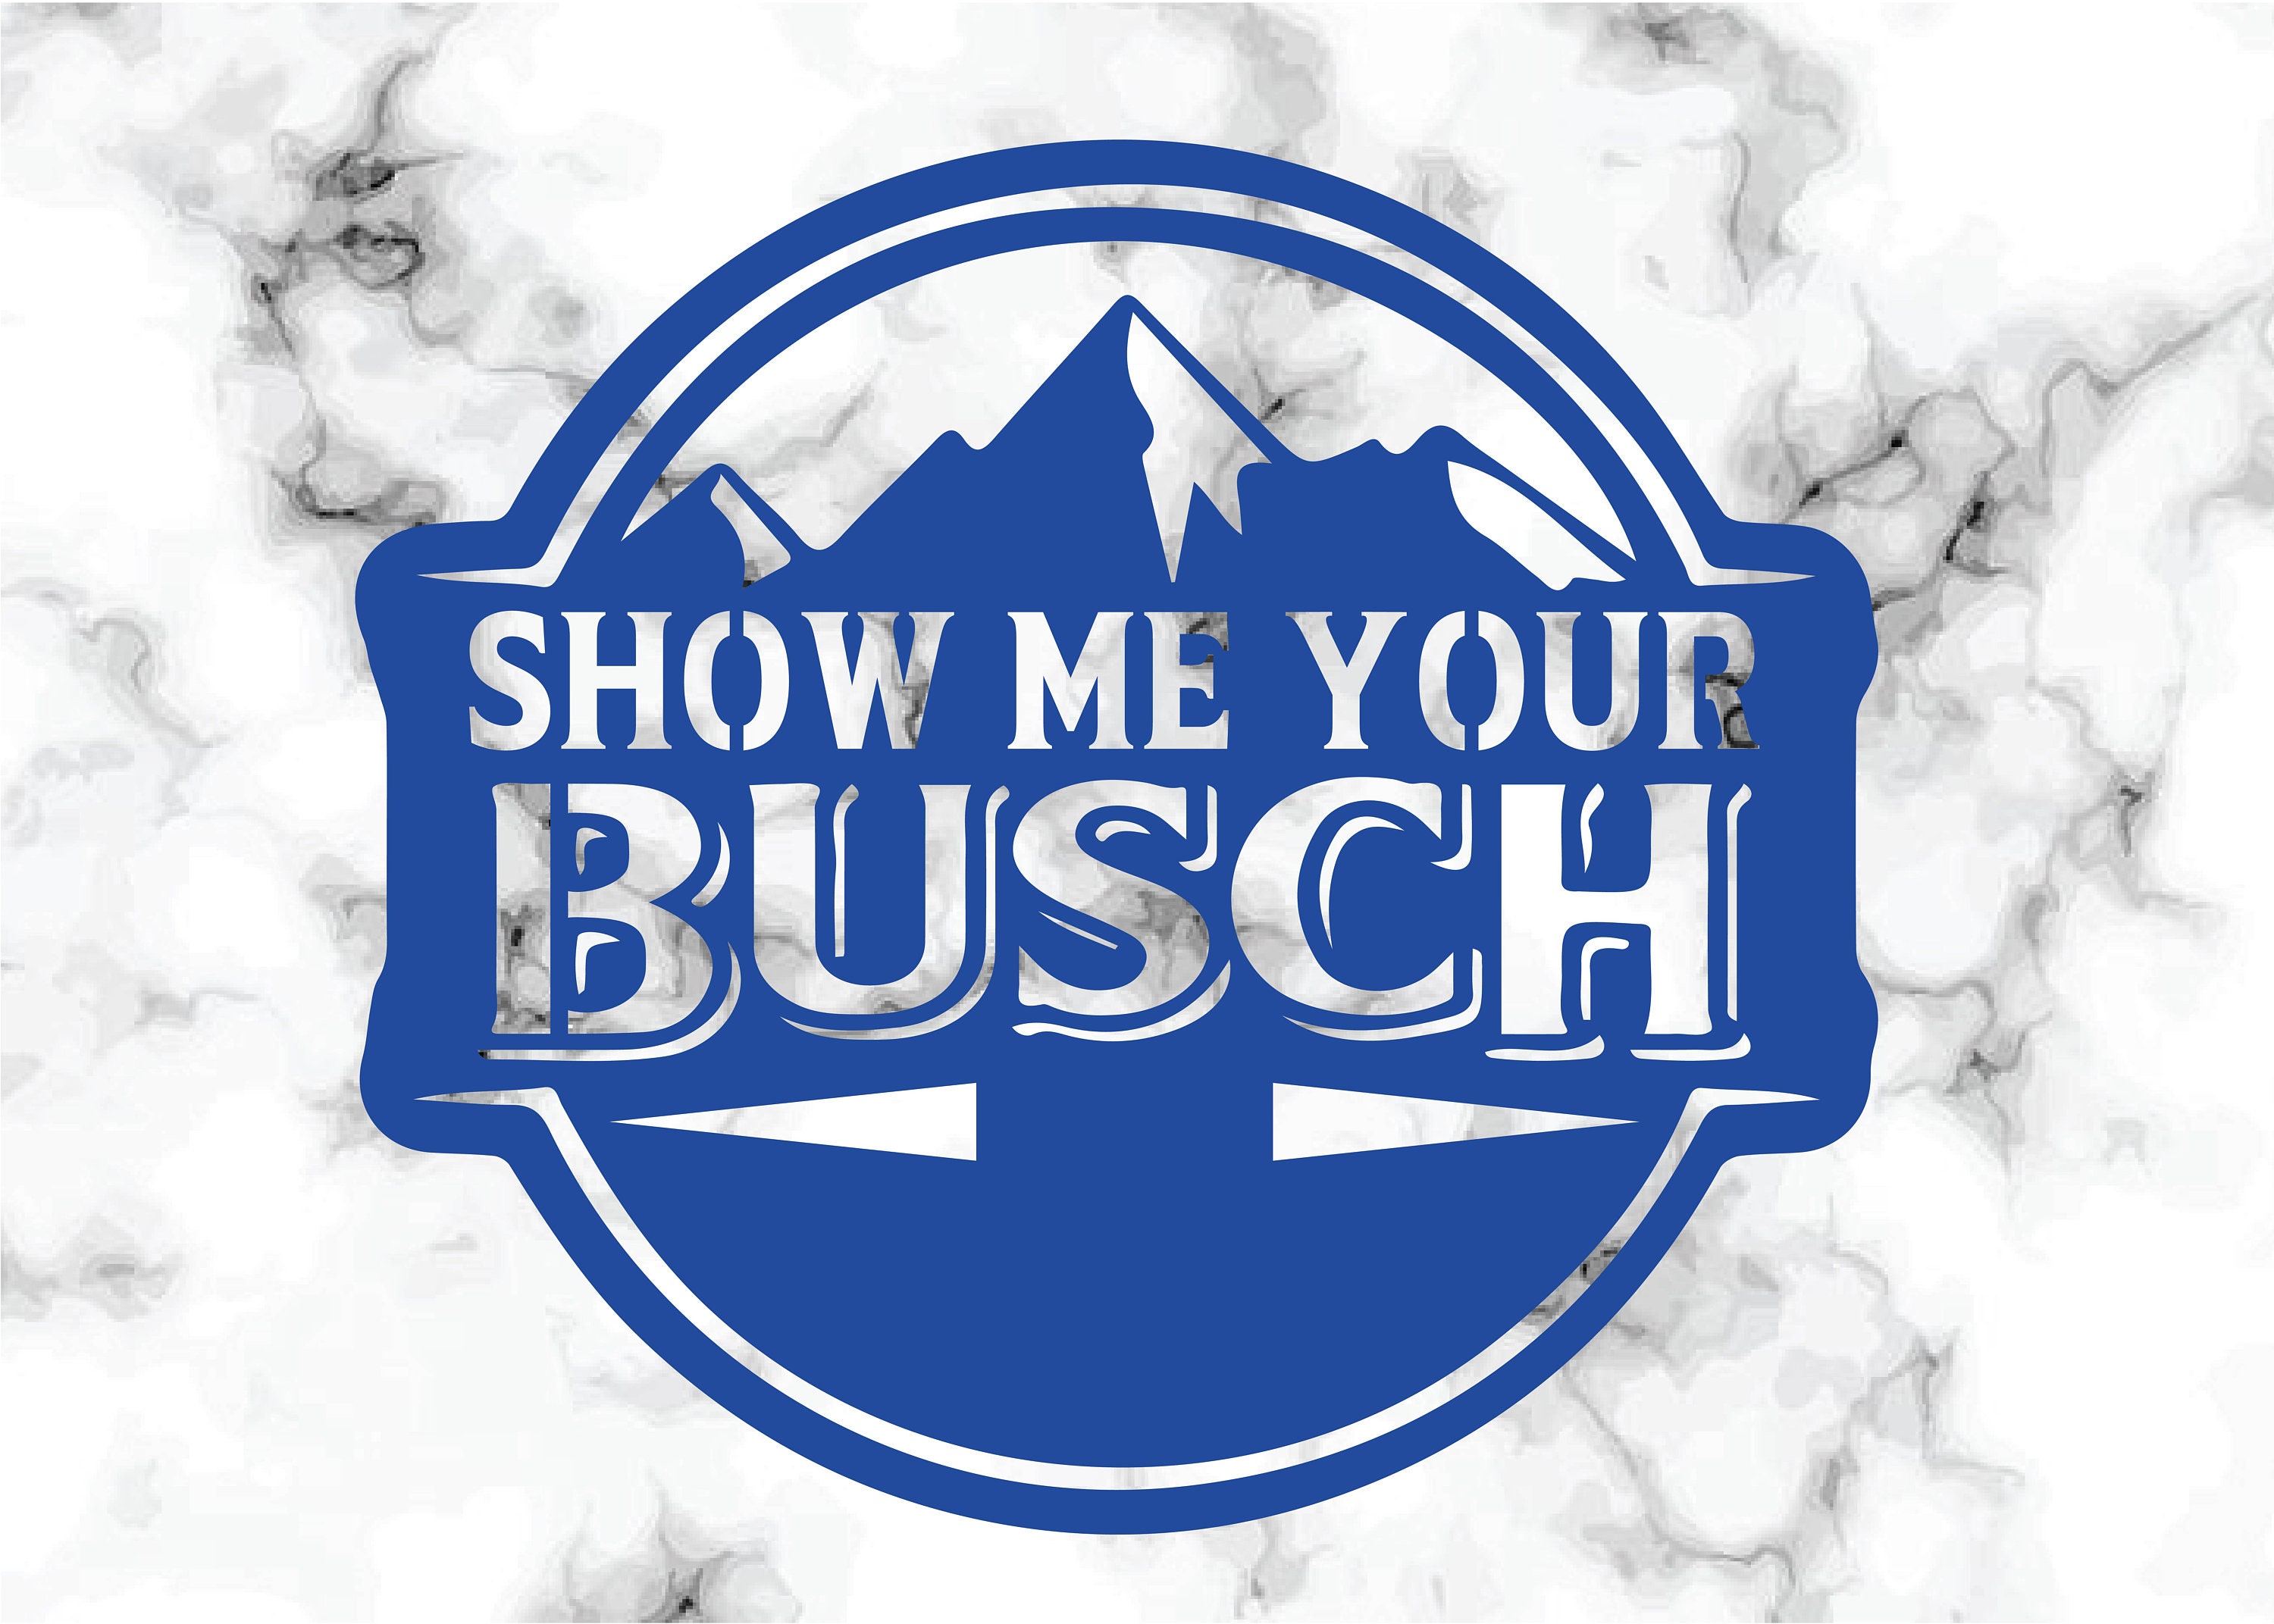 Best of Show me your bush